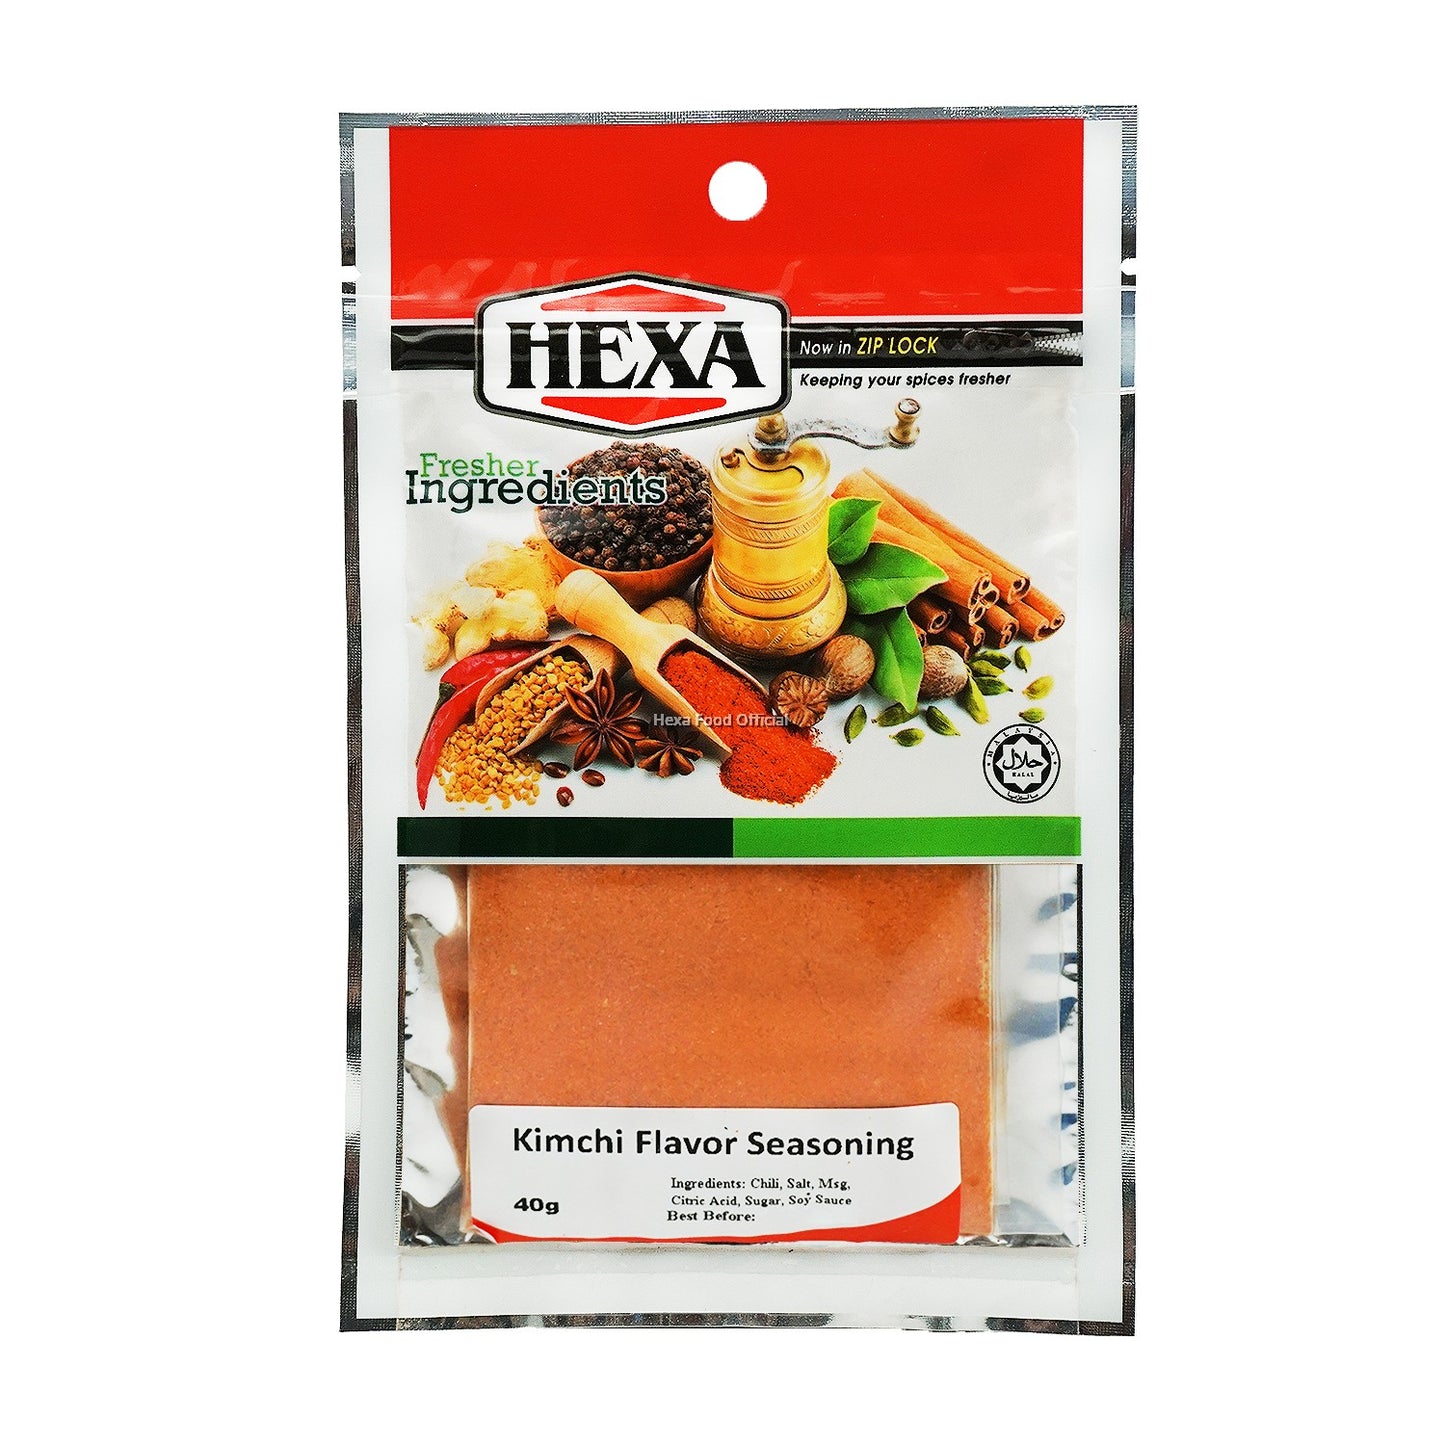 HEXA HALAL Kimchi 40gm + HEXA HALAL Cajun Spice 30gm + HEXA HALAL BBQ Flavor Seasoning 50gm